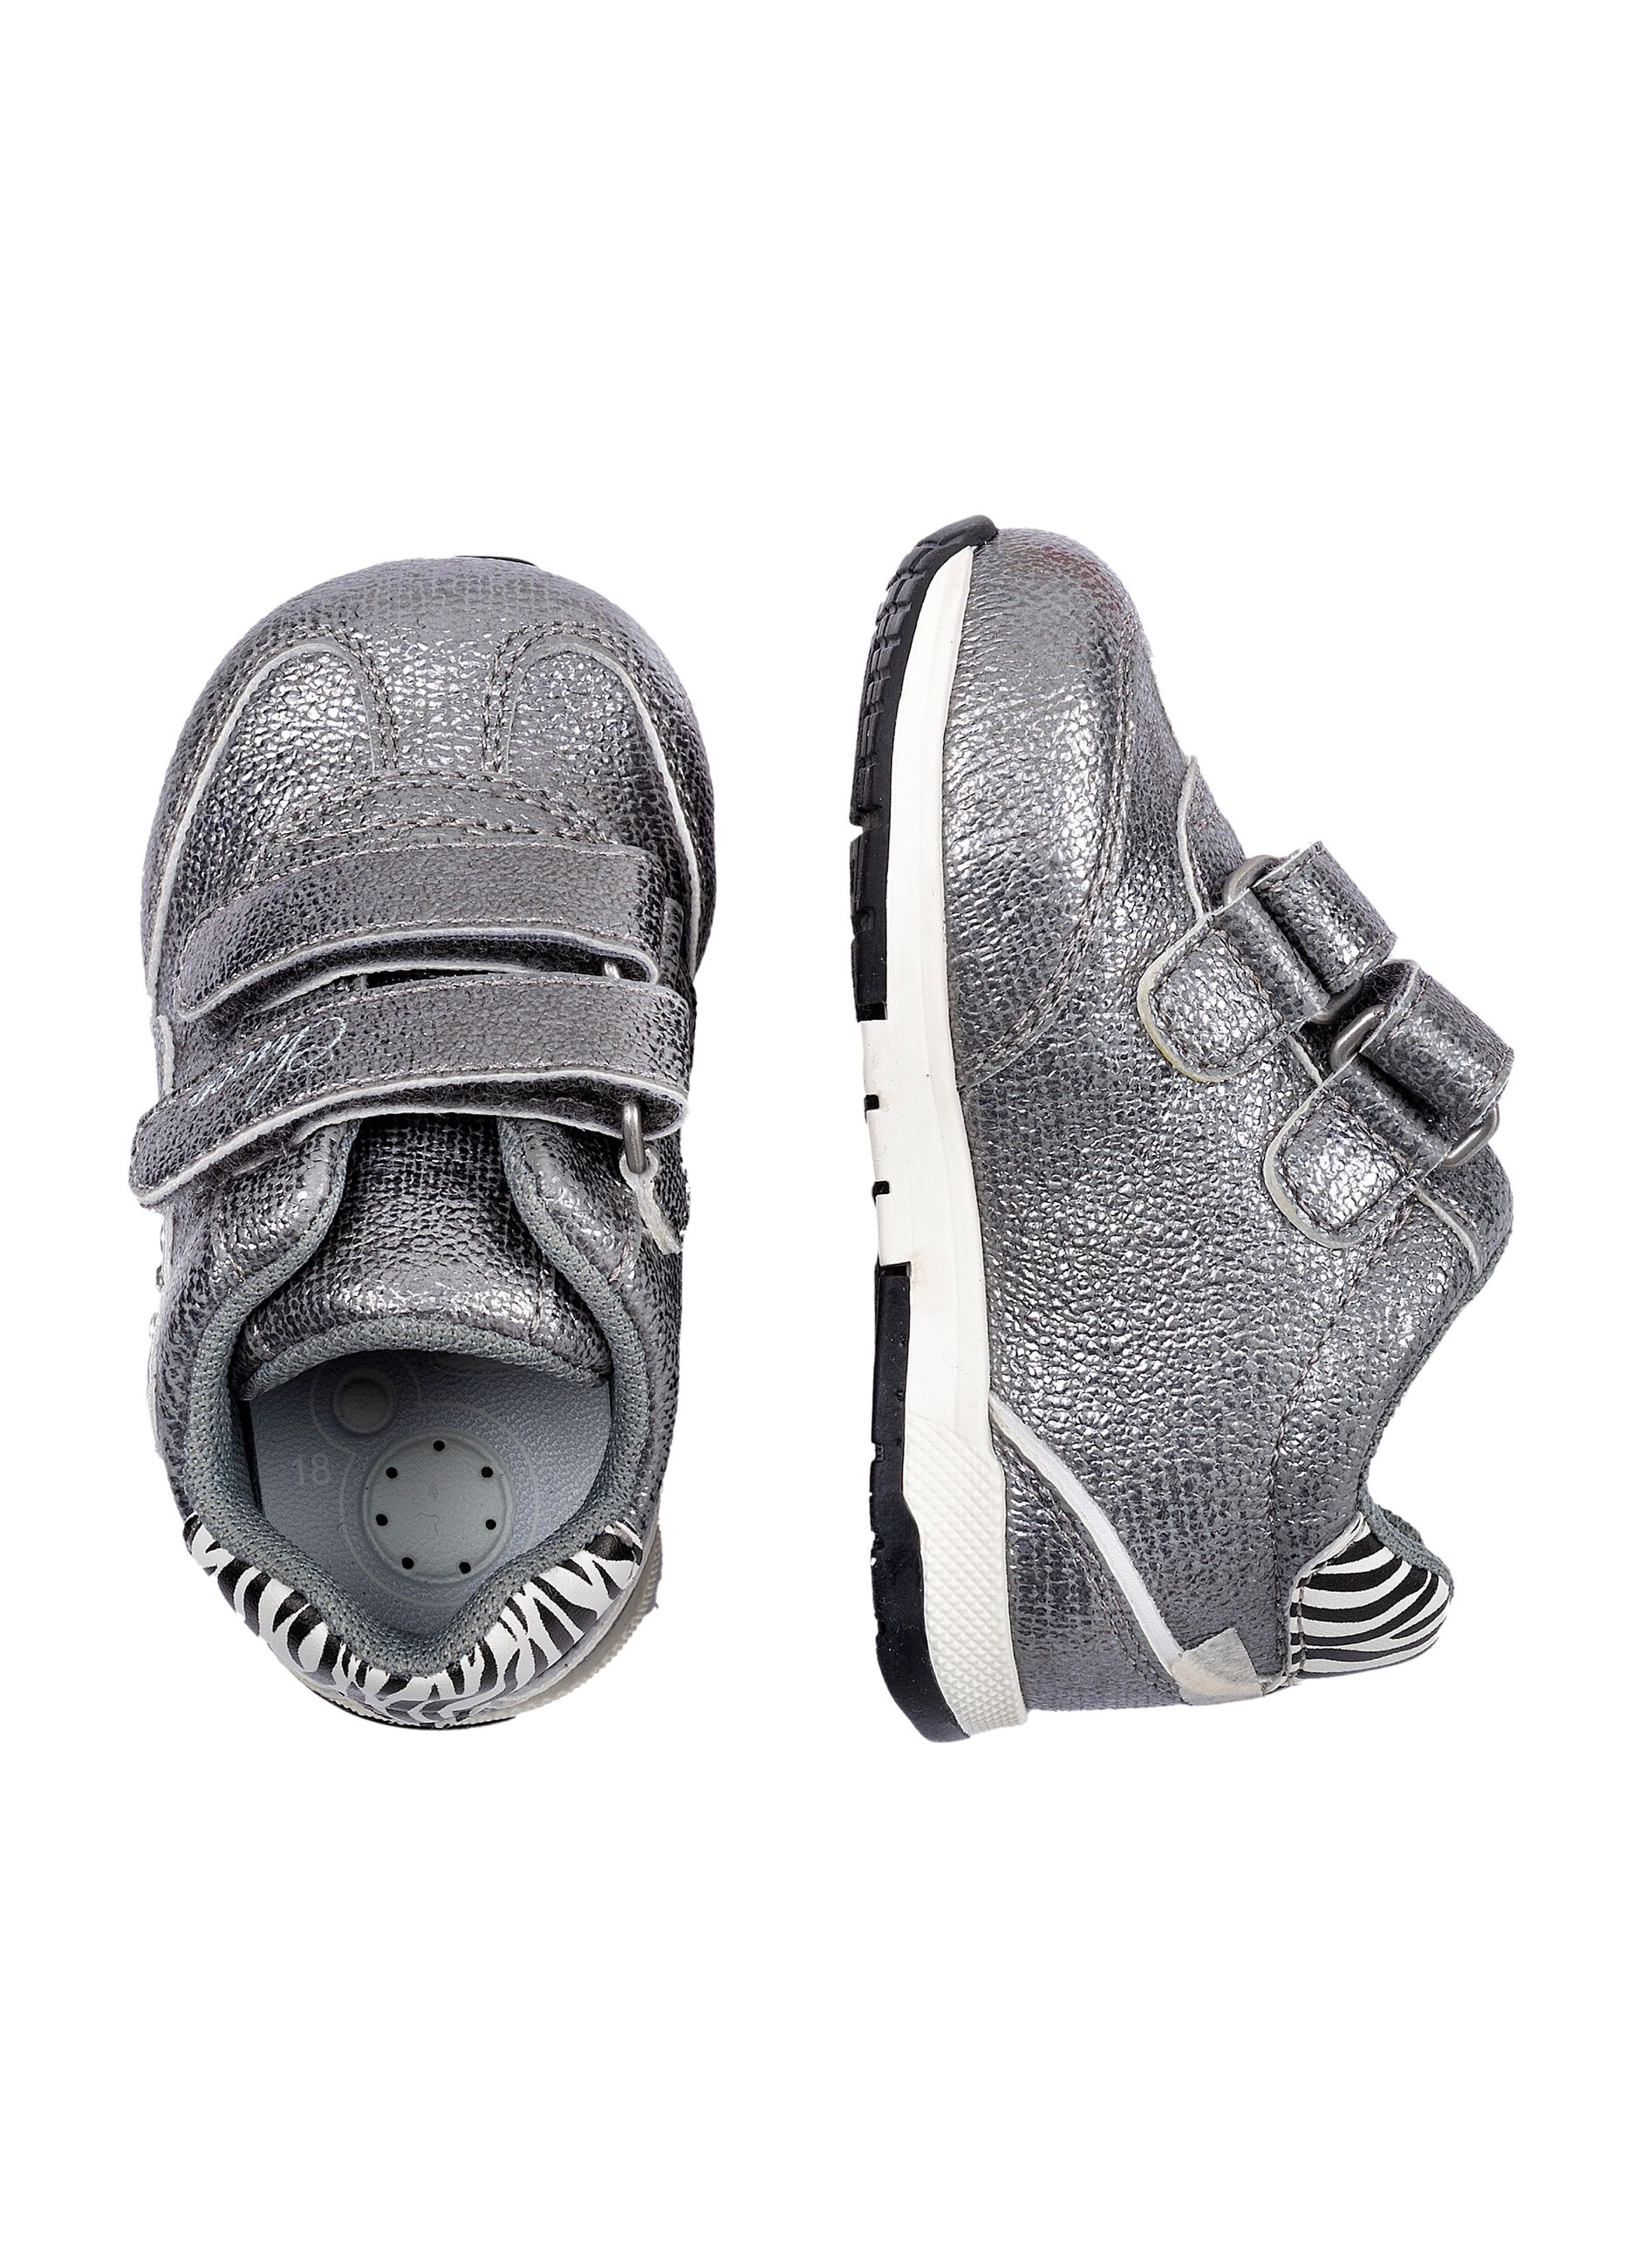 Sneakers argentate con dettaglio zebra Chicco